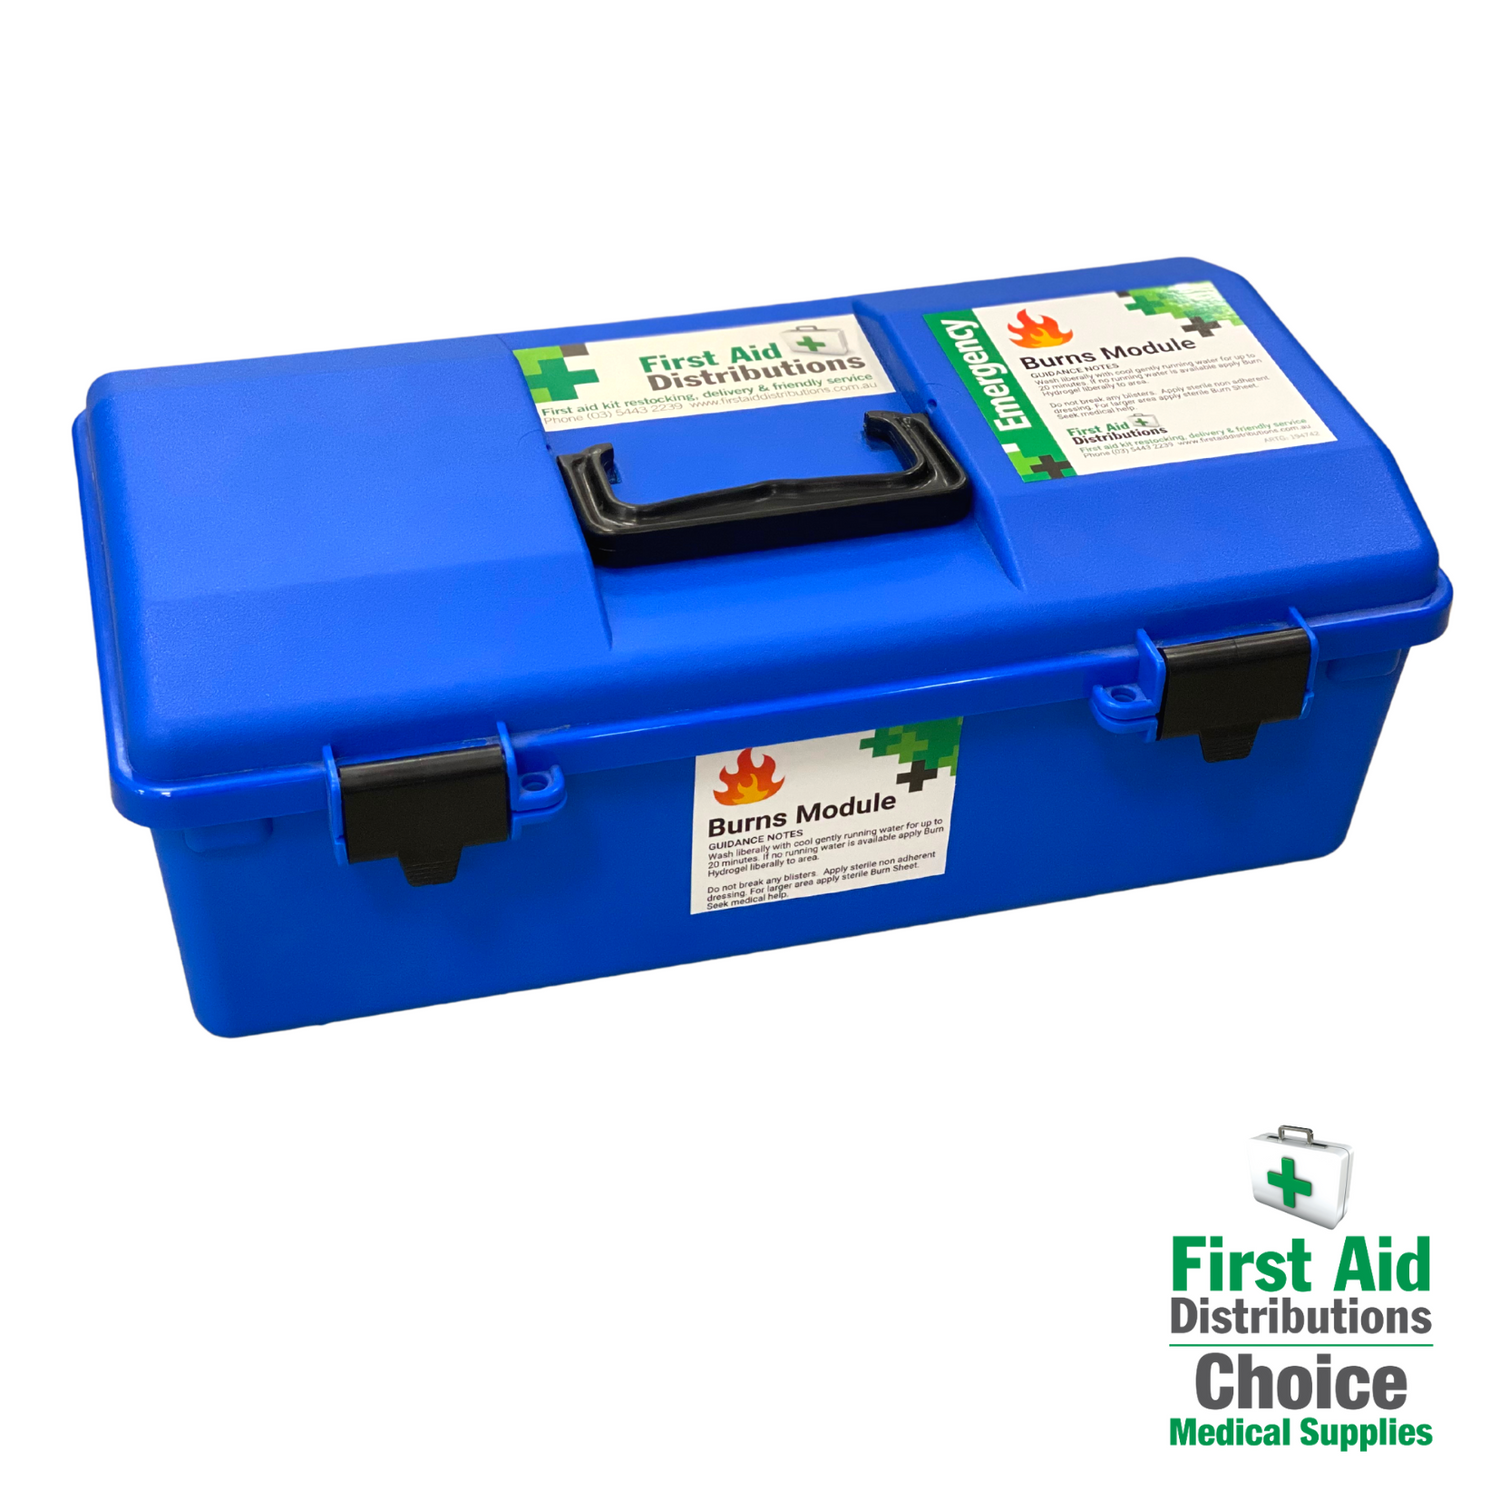 First Aid Kits - Burn